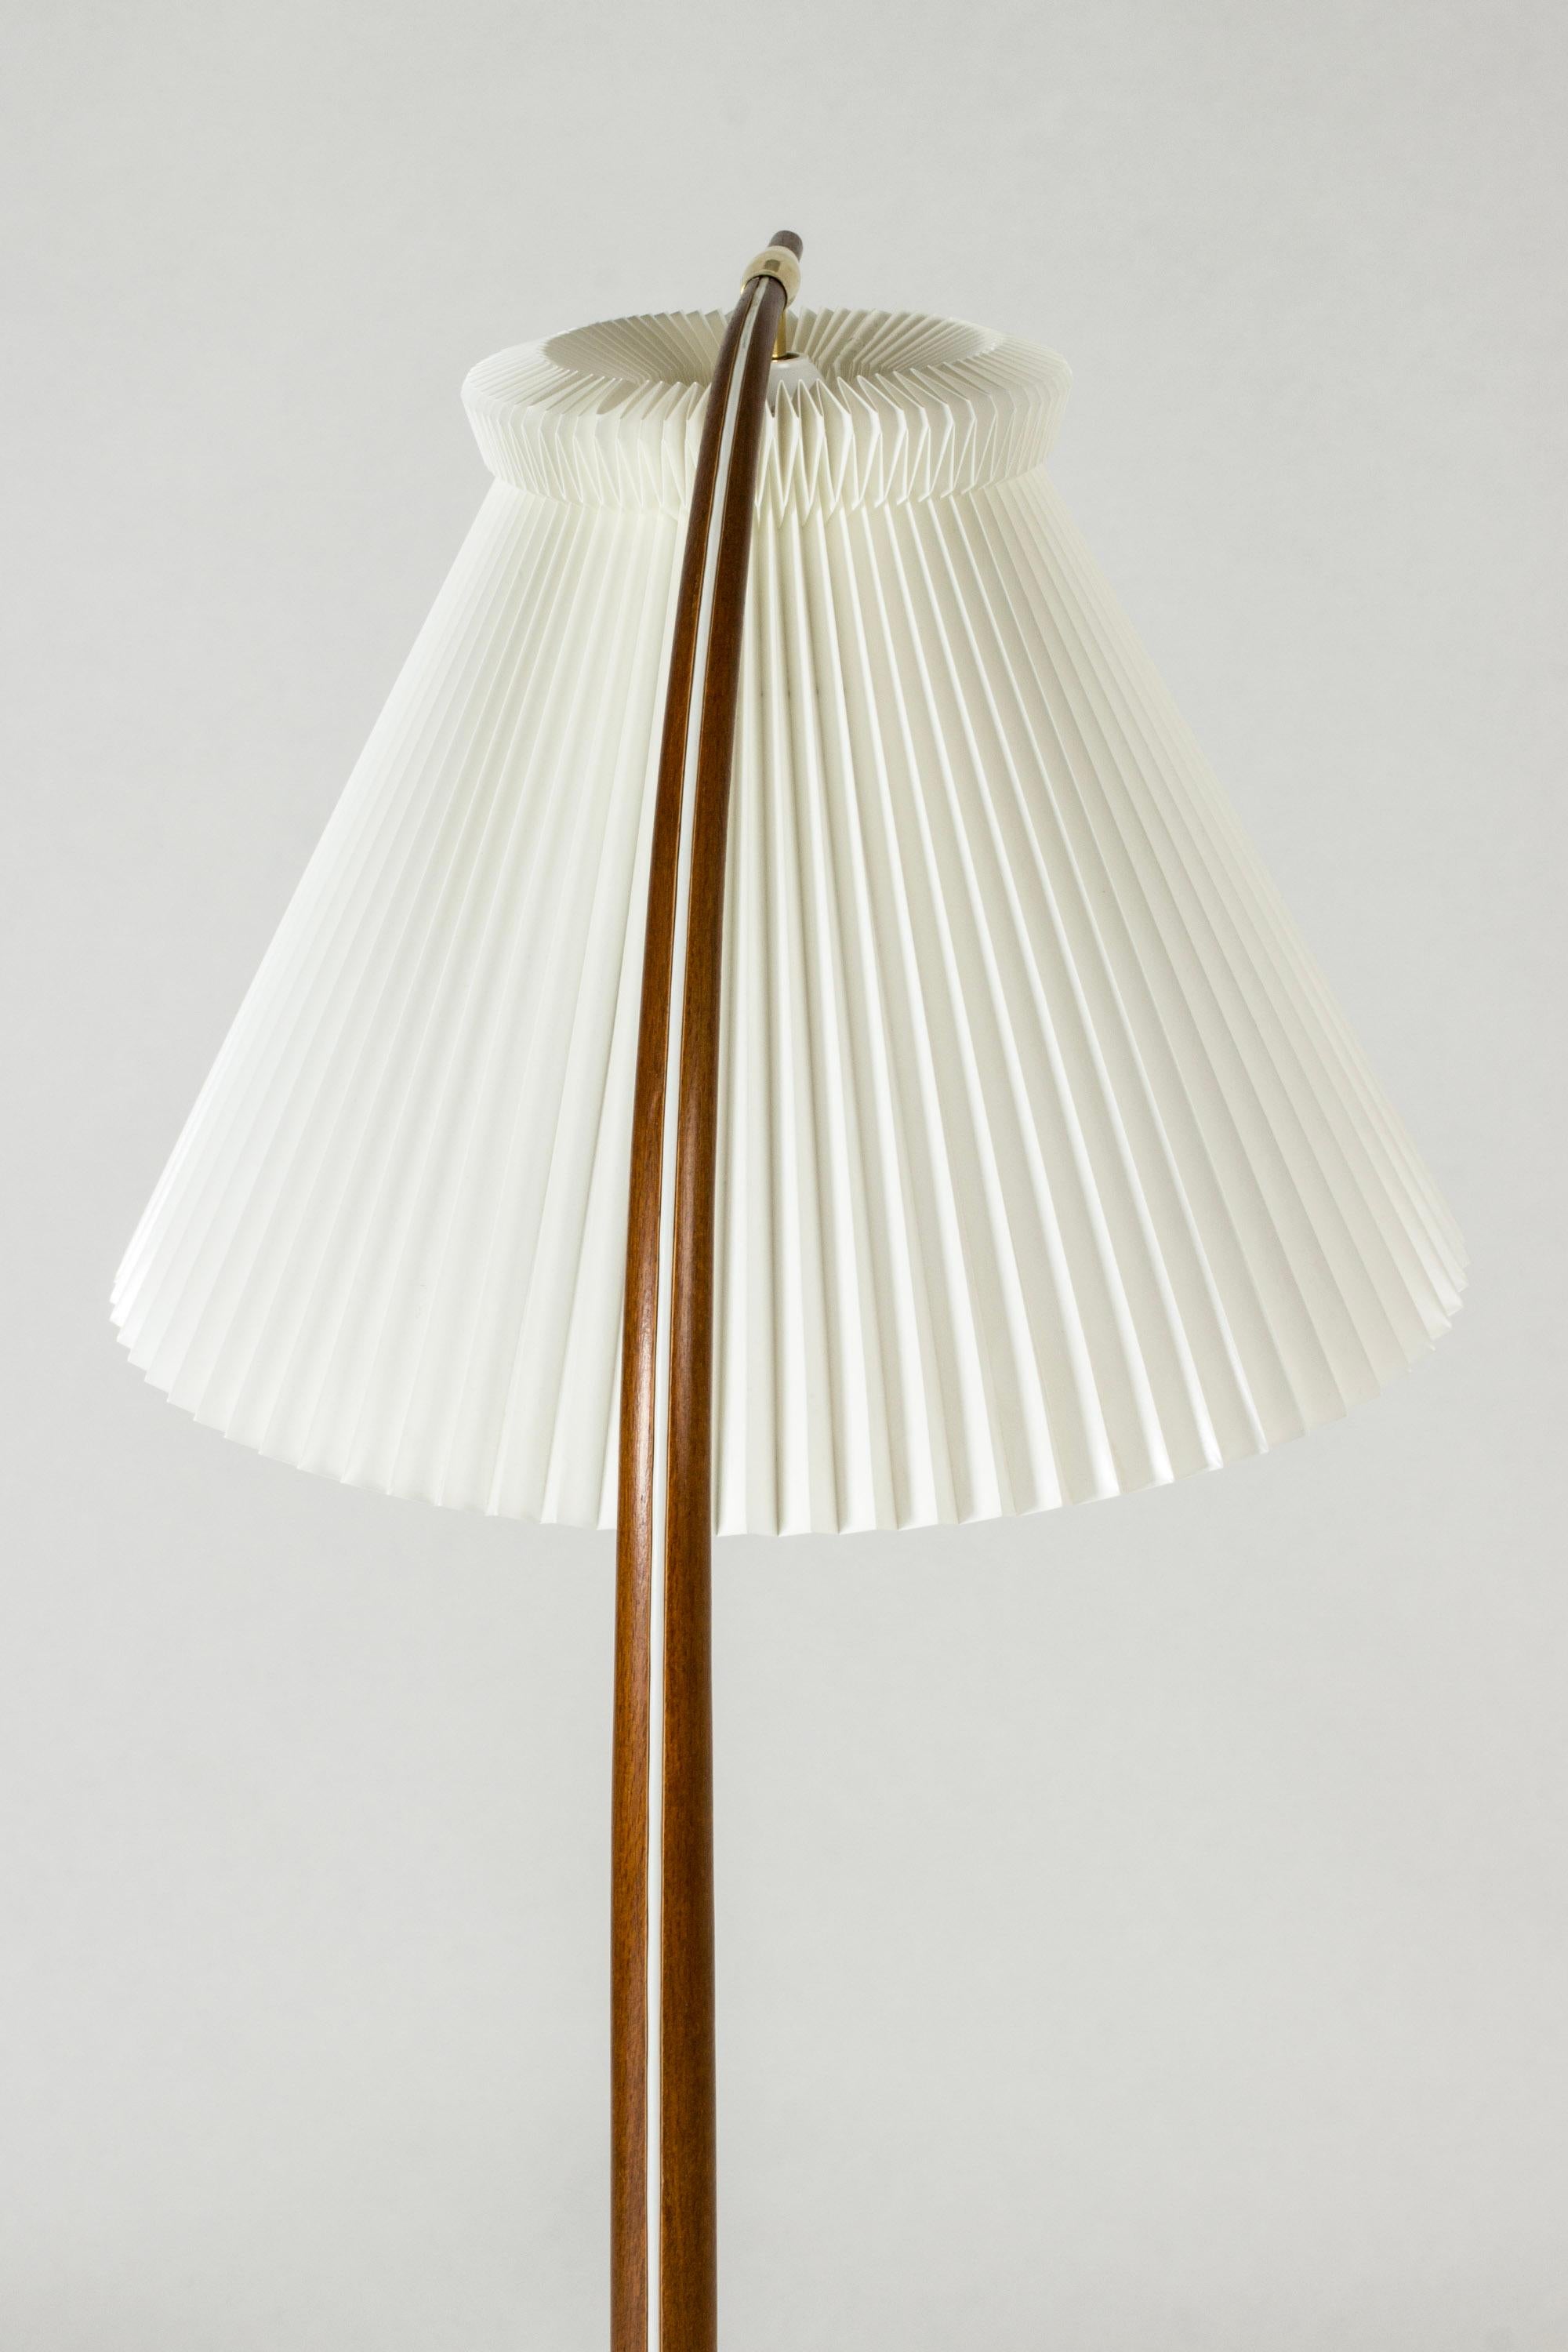 Mid-20th Century Modernist Teak Floor Lamp 